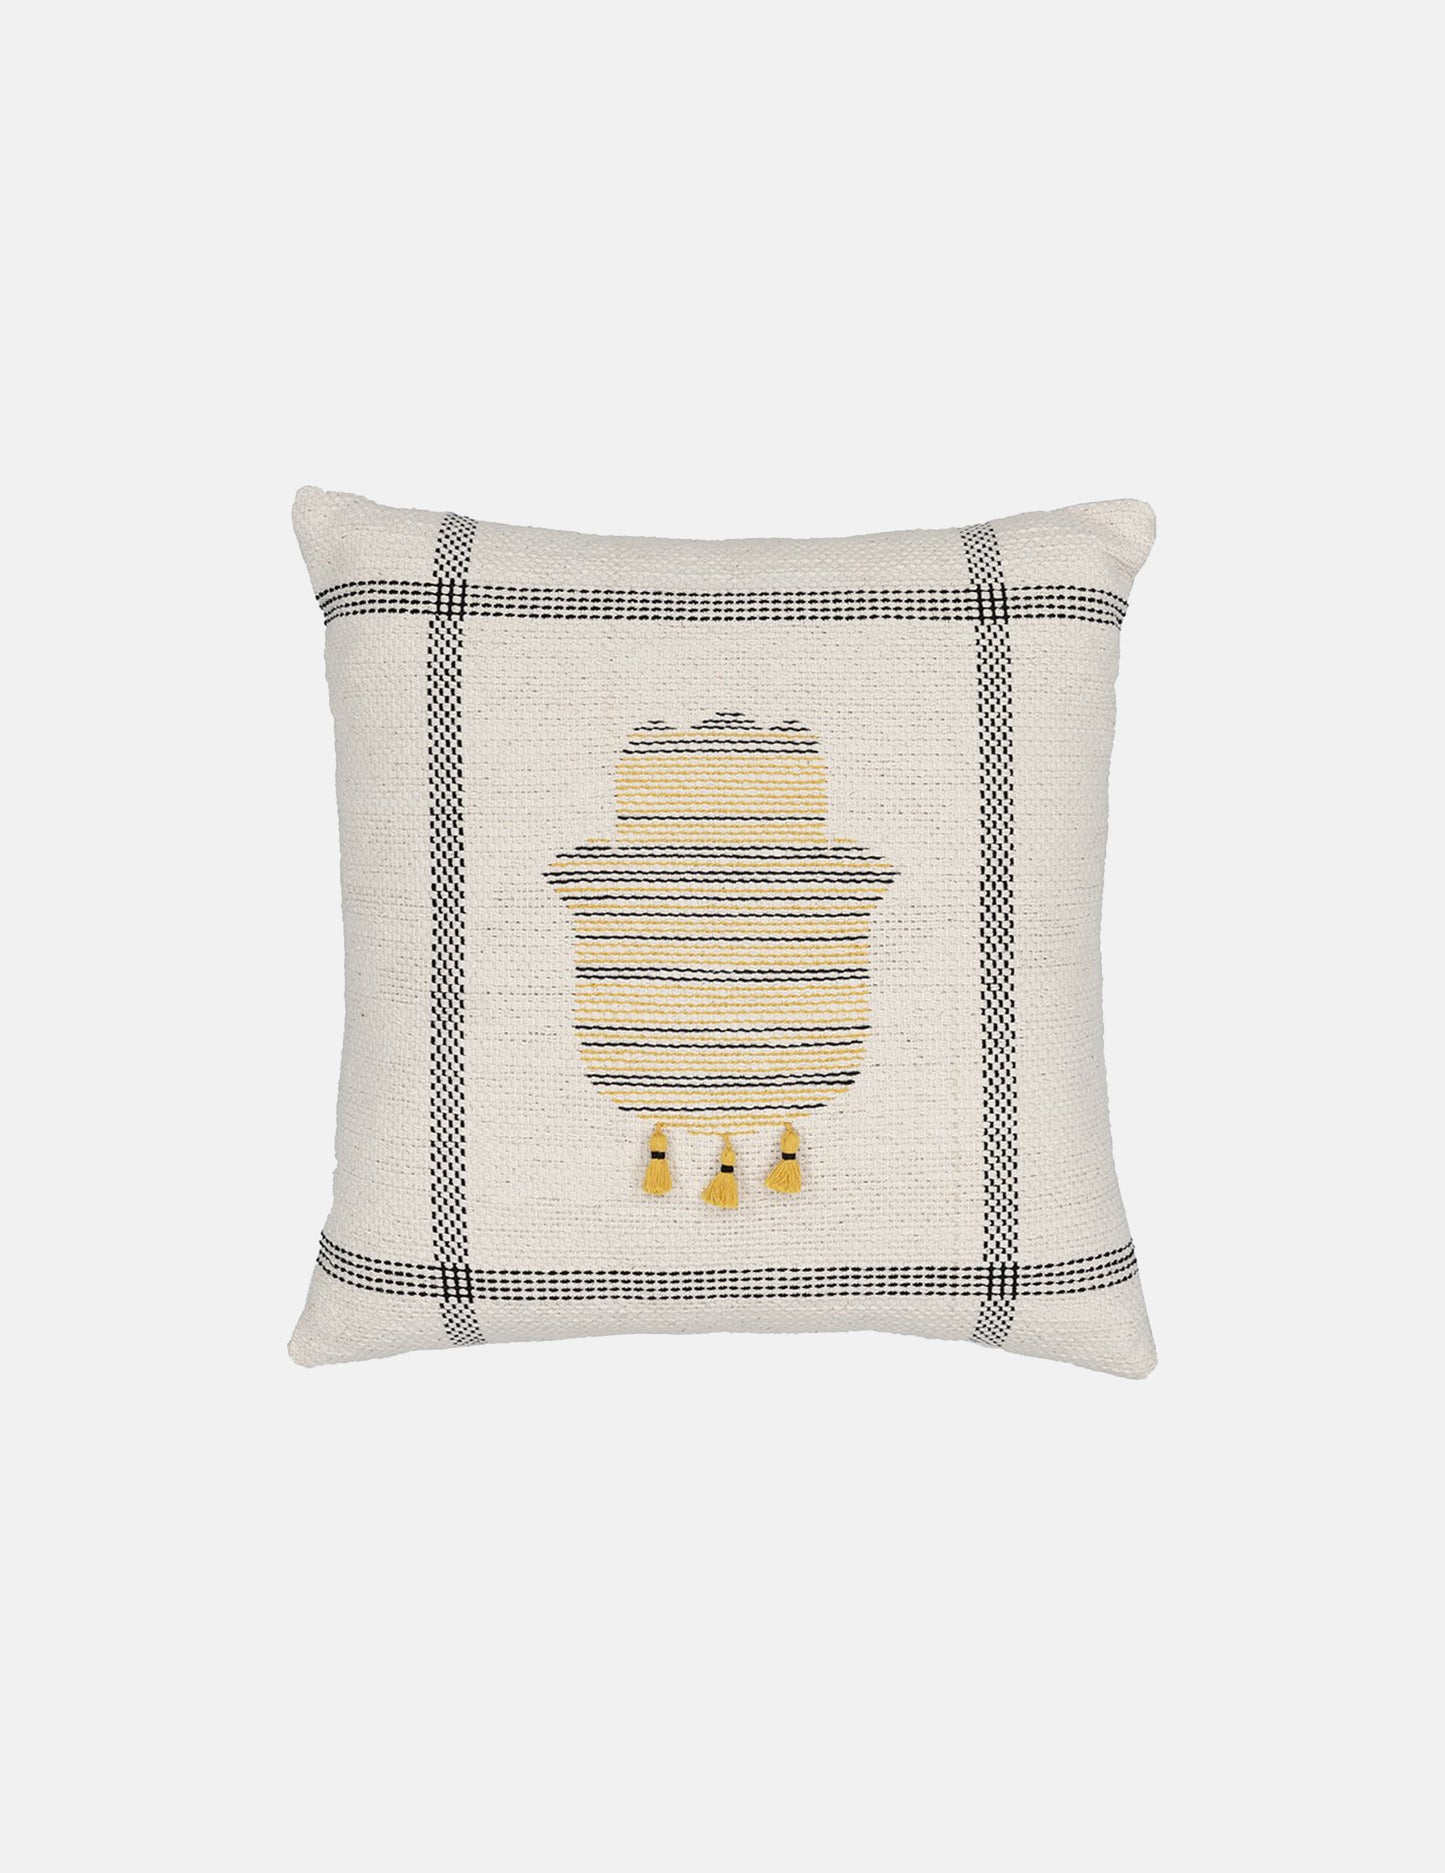 Hand-knit kilim hand design cushion